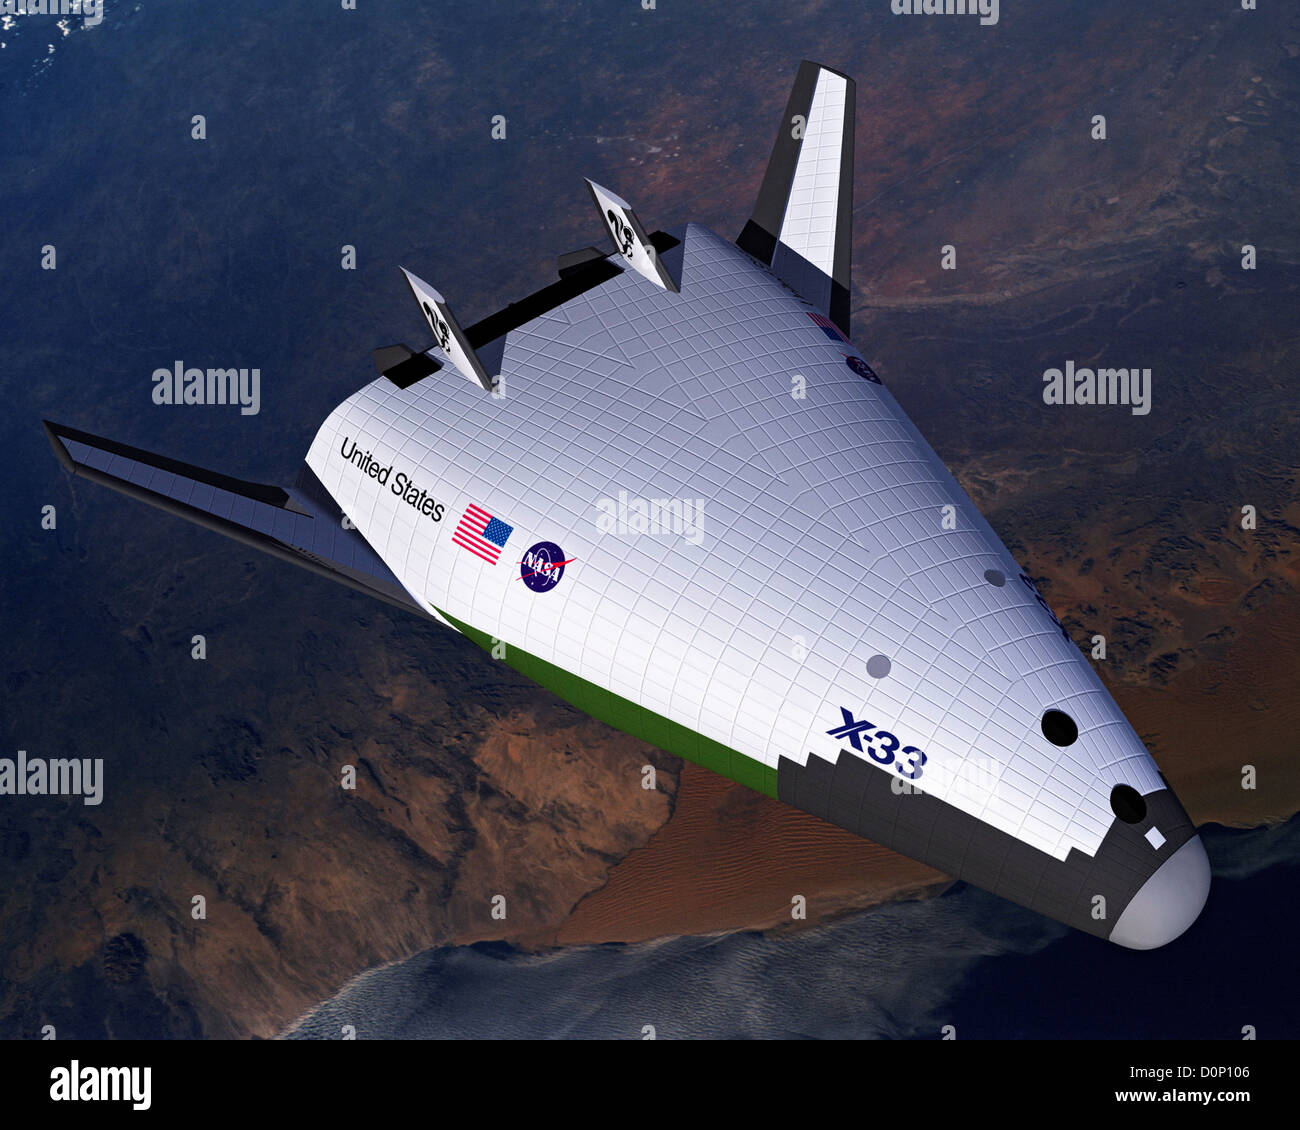 Une interprétation de l'artiste X-33 aéronefs conçus démontrer la technologie nécessaire à une phase de pleine échelle-à-orbite lancement Banque D'Images